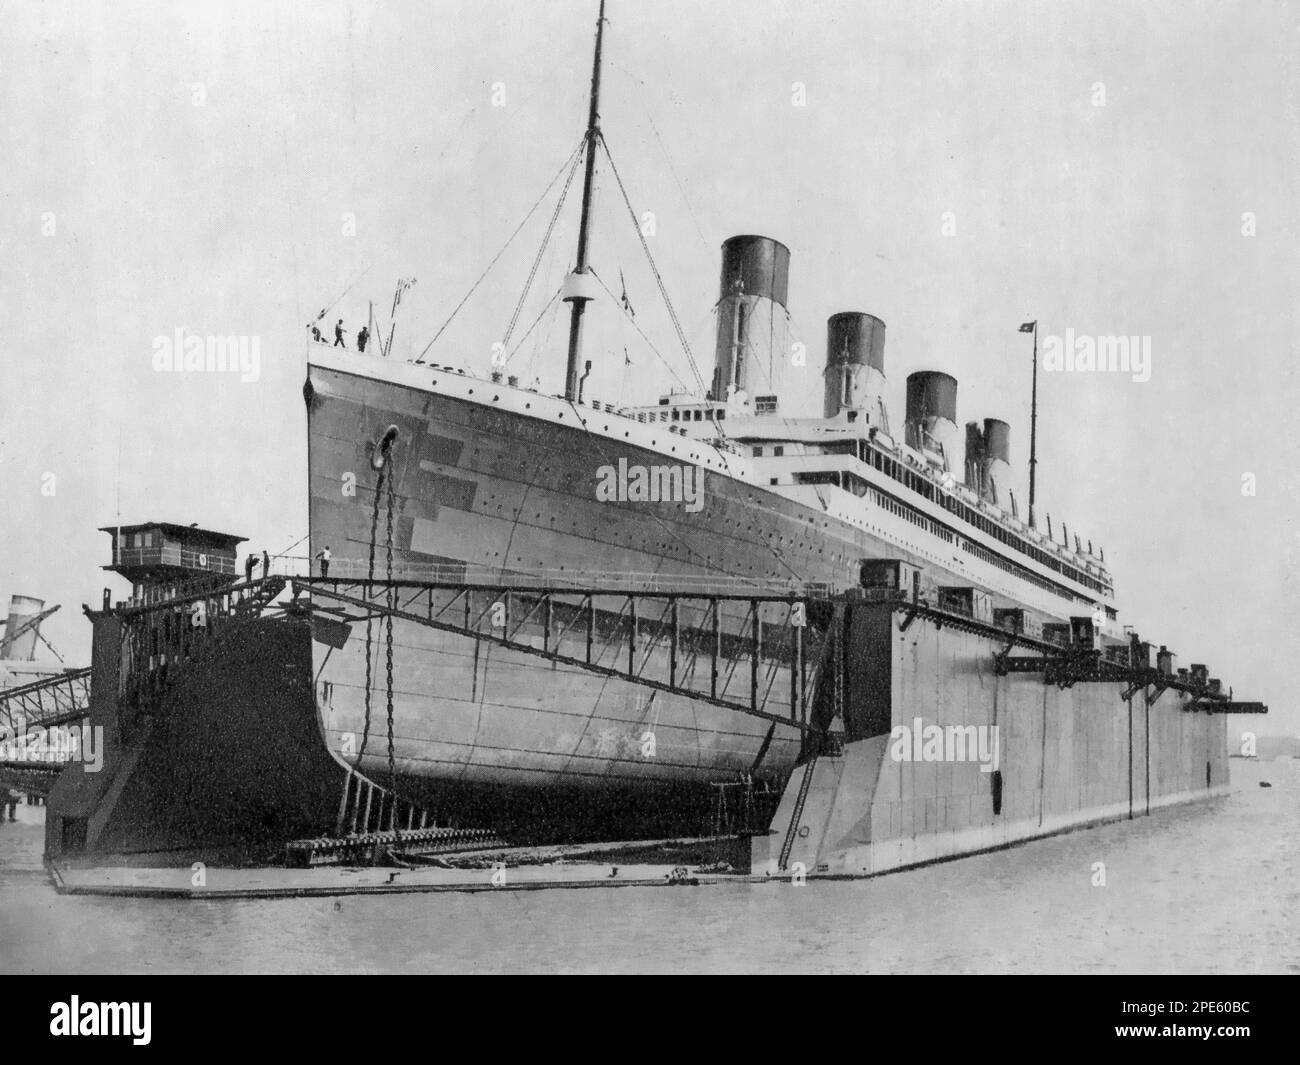 Der White Star Liner RMS Olympic im schwimmenden Trockendock, Southampton, England, c1924. RMS Olympic war ein britischer Ozeandampfer und das führende Schiff des Trios der olympischen Klasse der White Star Line. Im Gegensatz zu ihren kurzlebigen Schwesterschiffen Titanic und Britannic hatte Olympic eine Karriere von 24 Jahren zwischen 1911 und 1935. Stockfoto